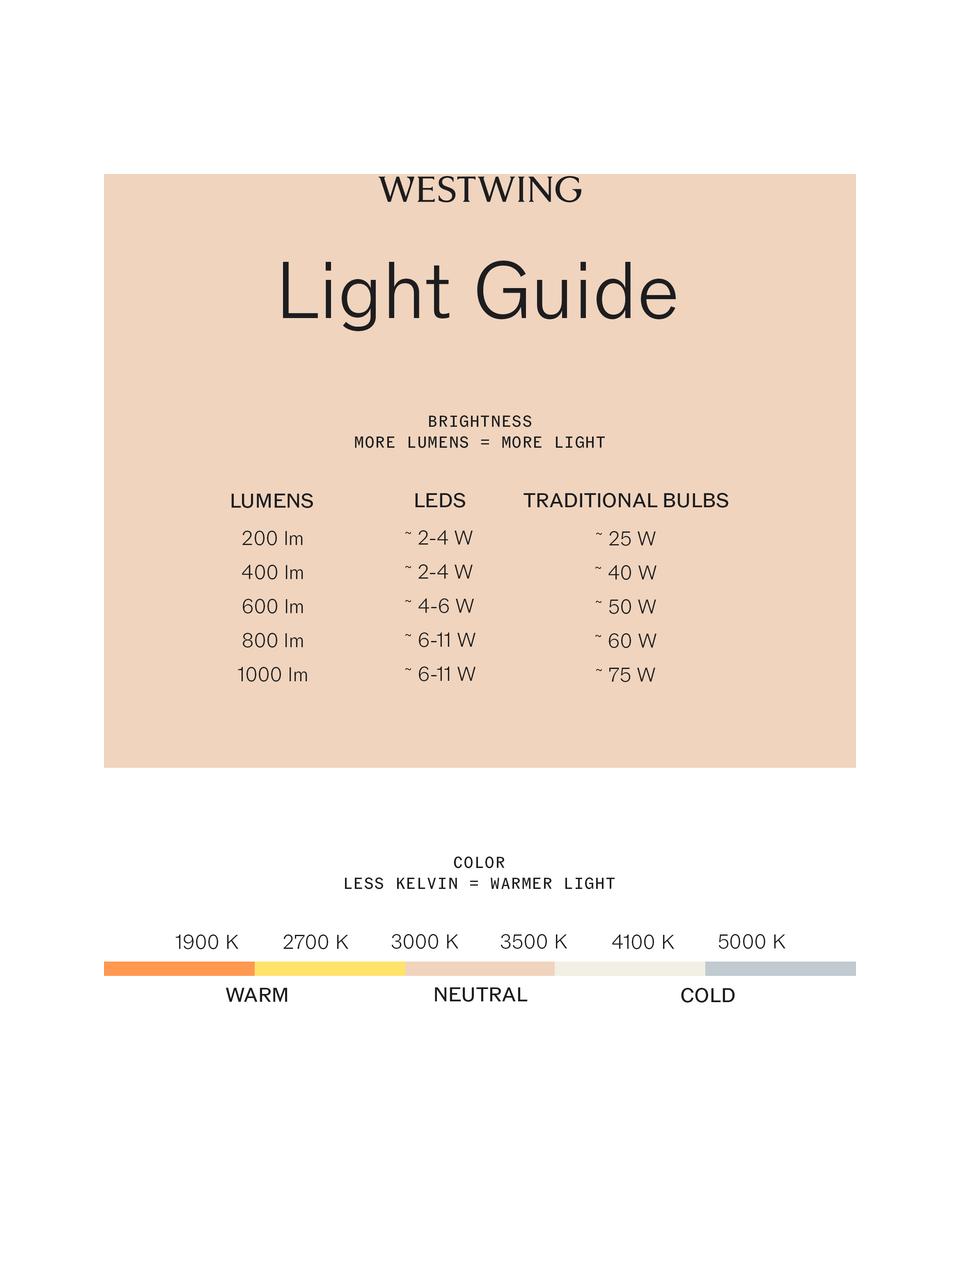 Lampadina E27, luce regolabile, bianco caldo, 1 pz, Lampadina: vetro, Base lampadina: alluminio, Trasparente, Ø 5 x Alt. 8 cm